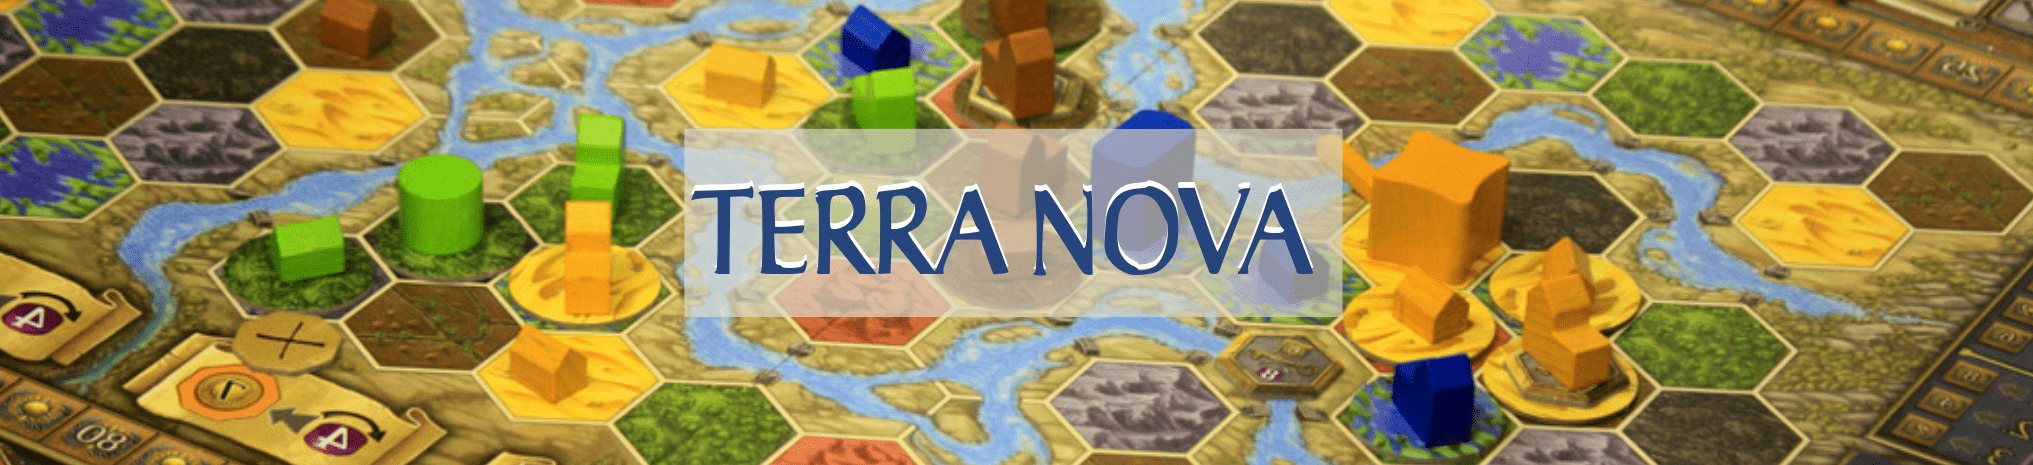 Terra-Nova review